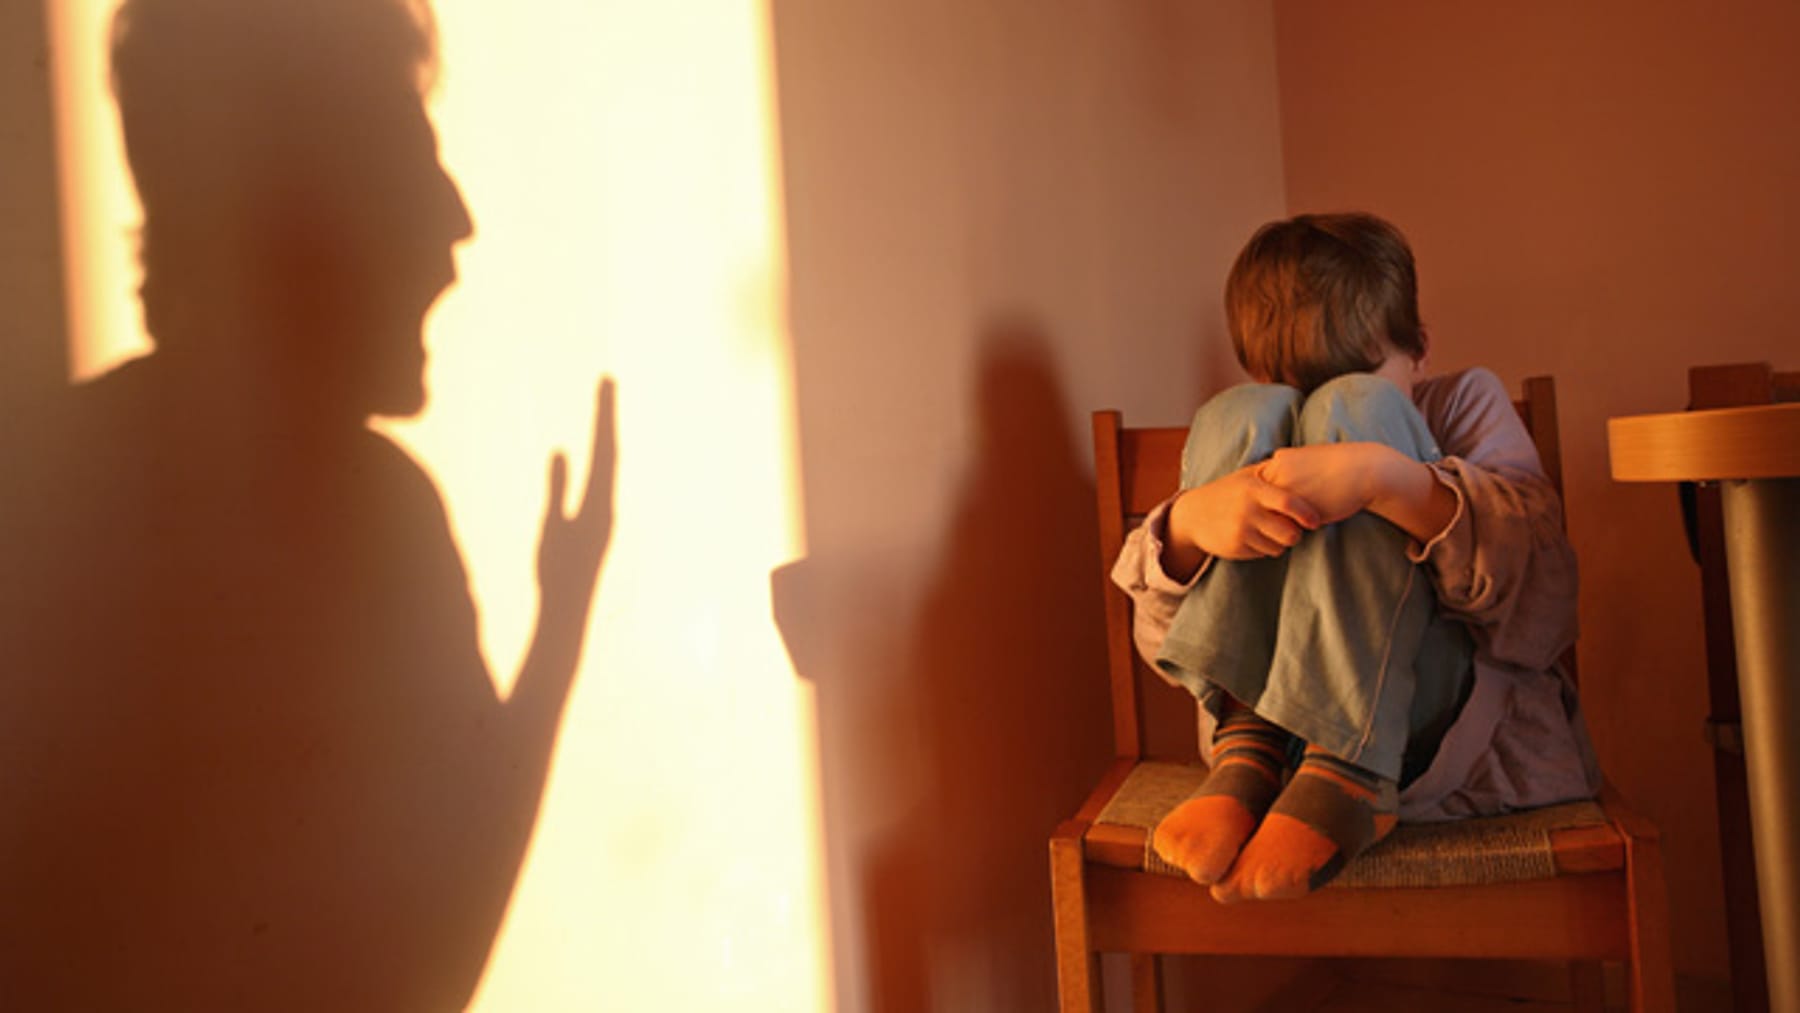 häusliche gewalt gegen kinder eltern ansprechen